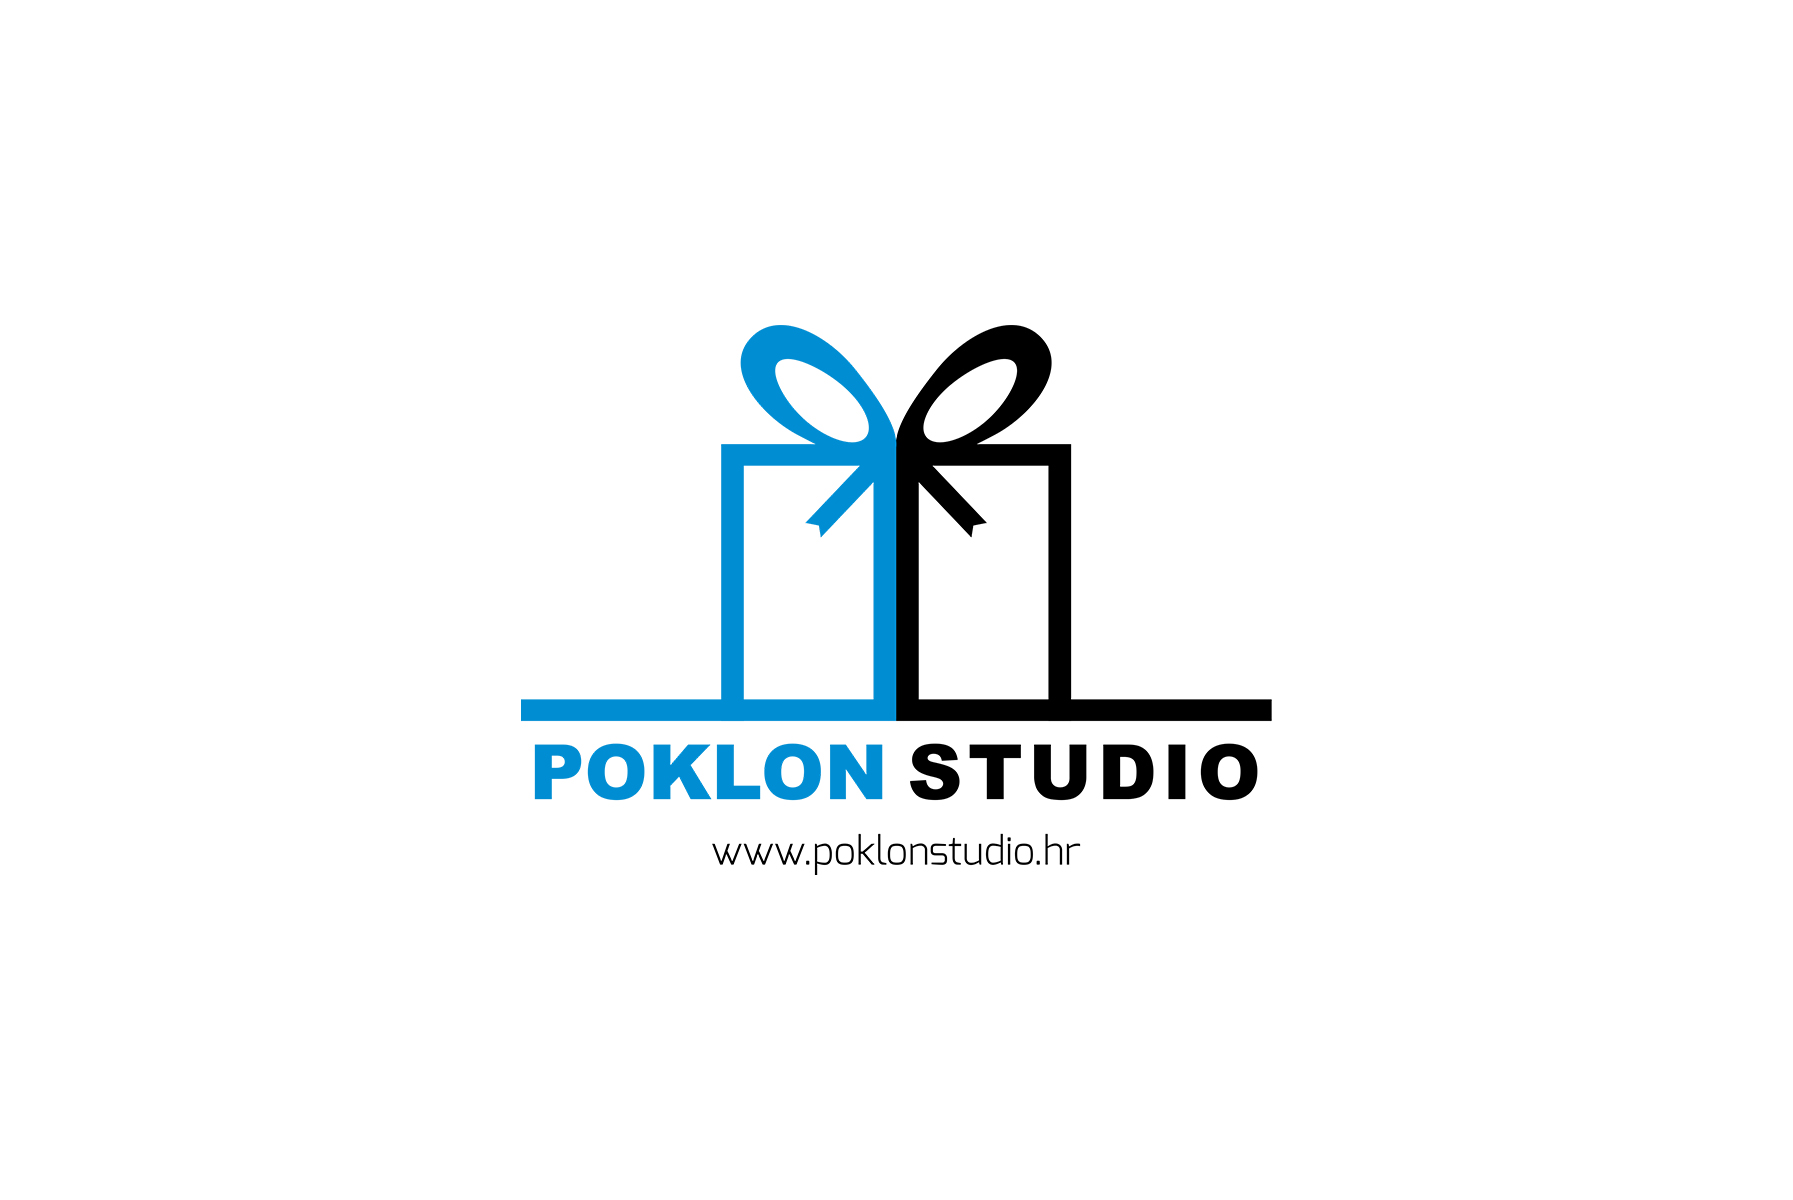 Poklon Studio